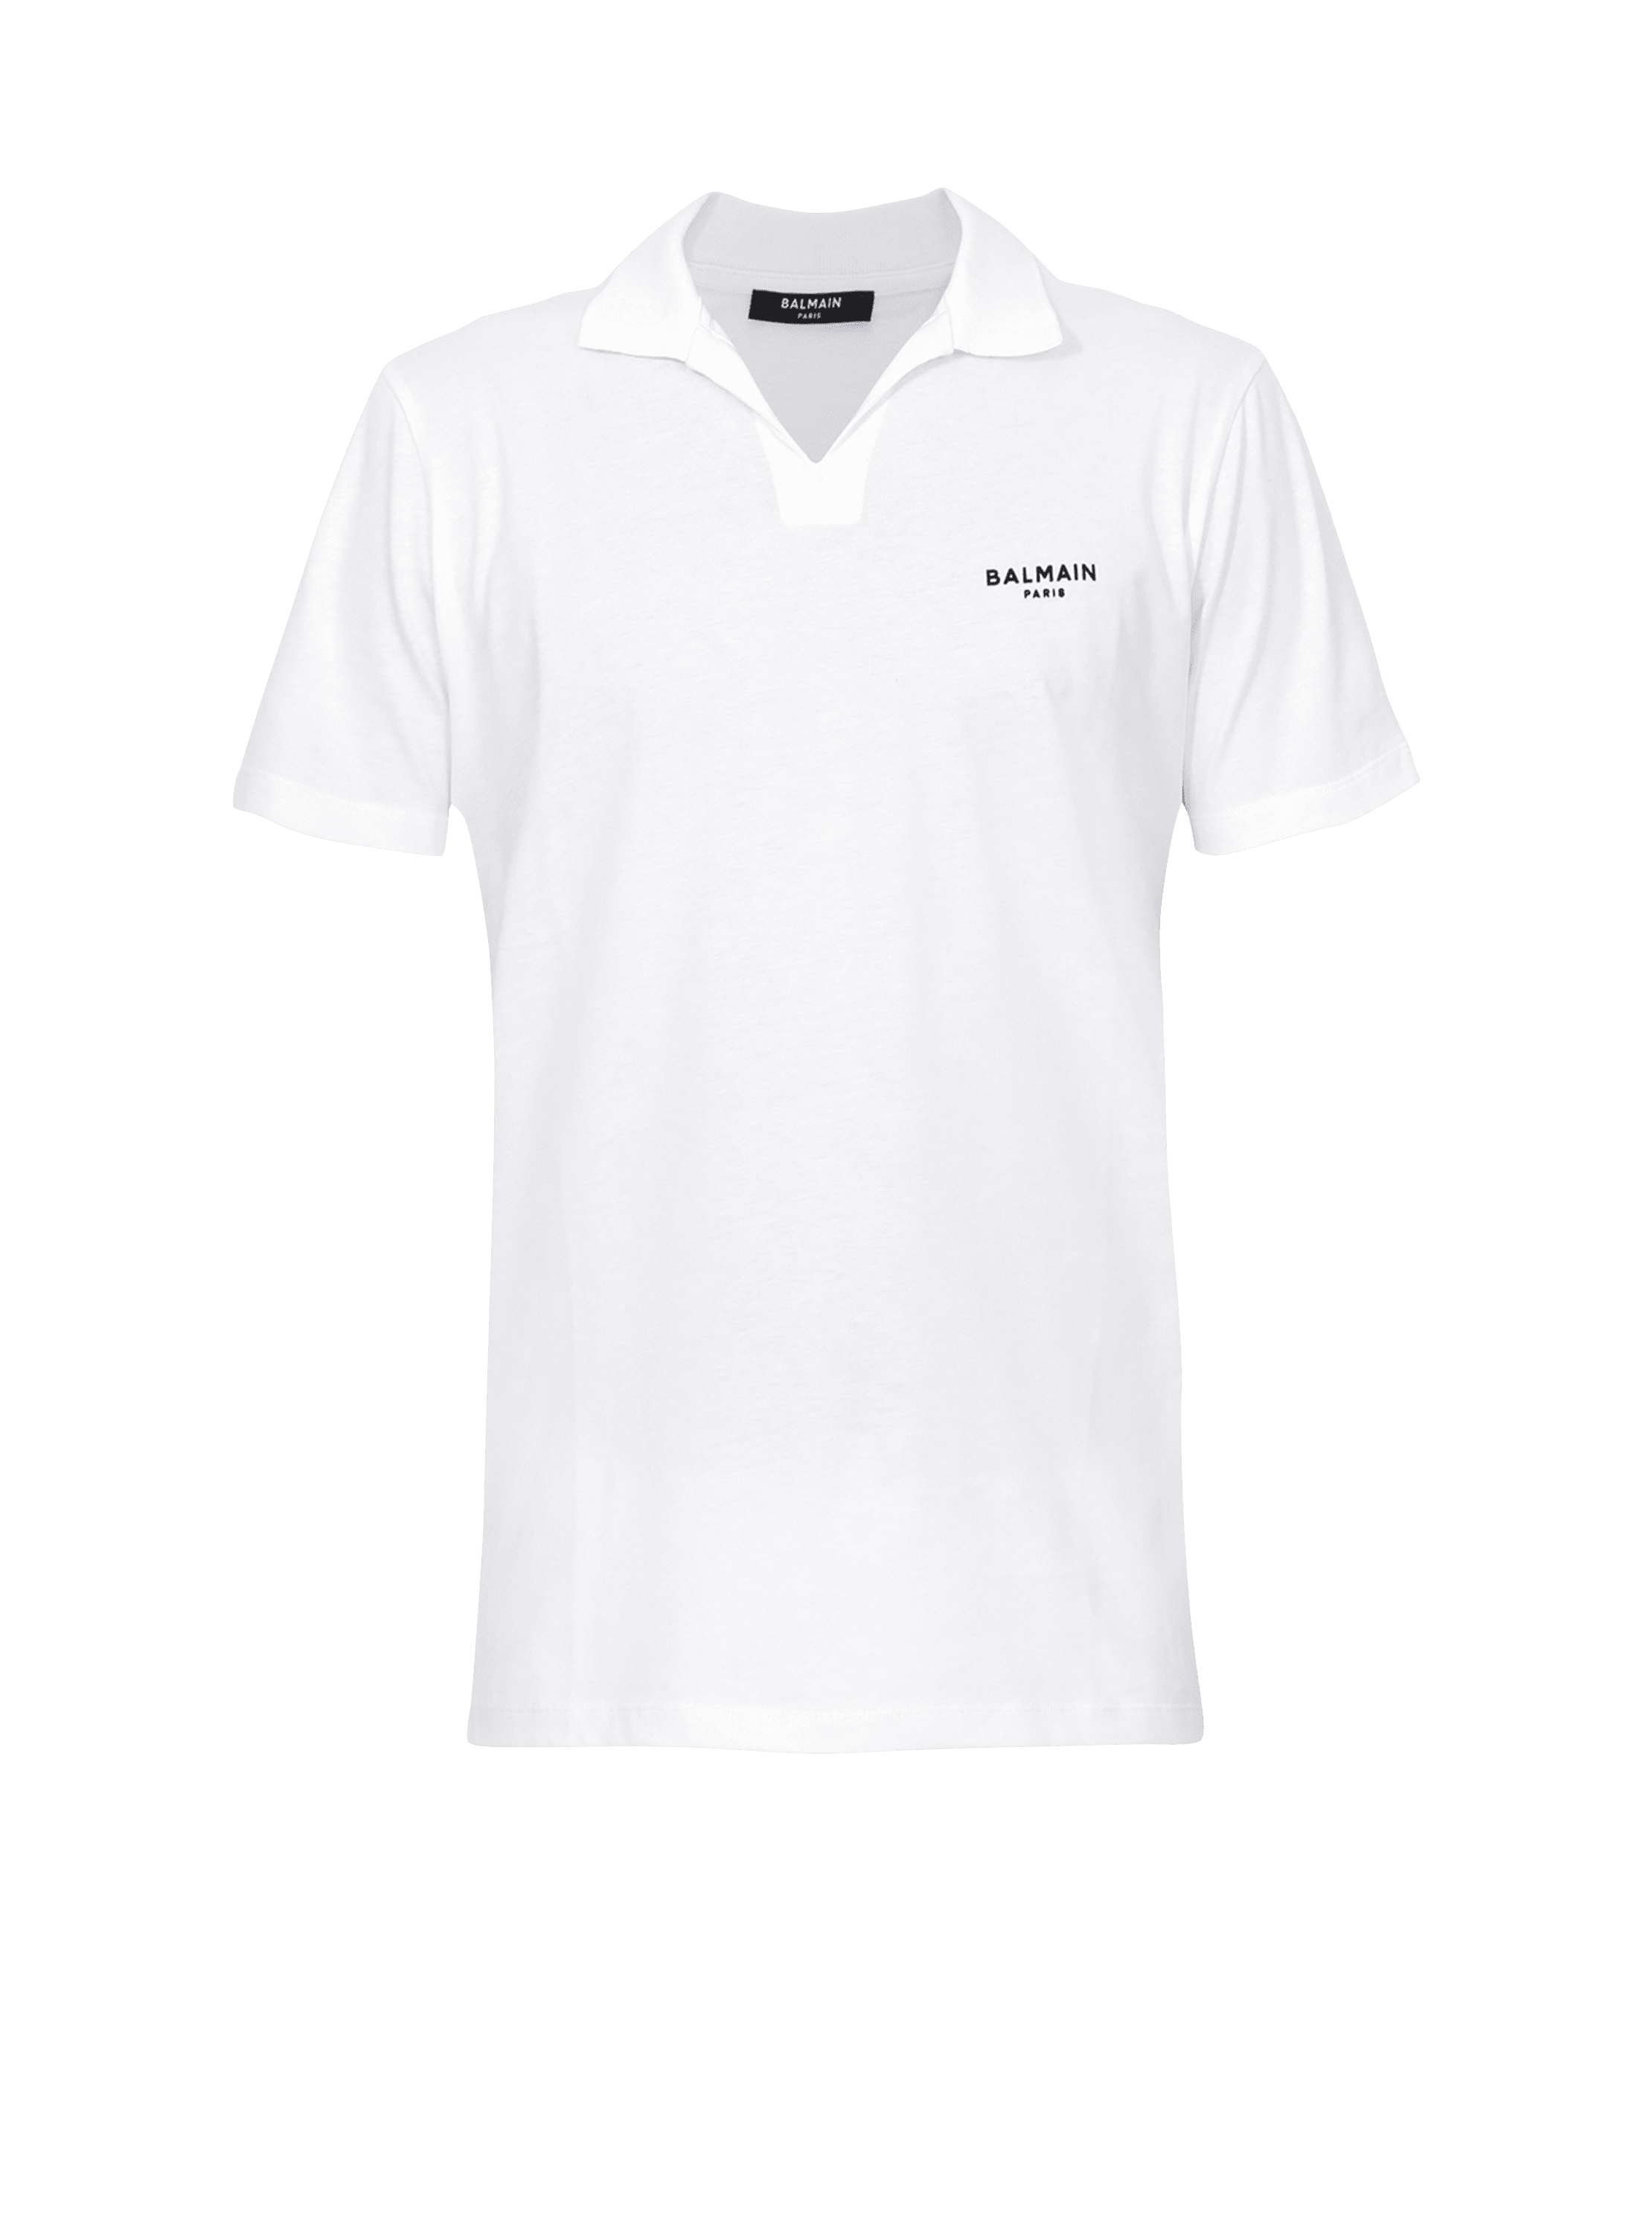 Balmain logo polo shirt in eco-responsible cotton -